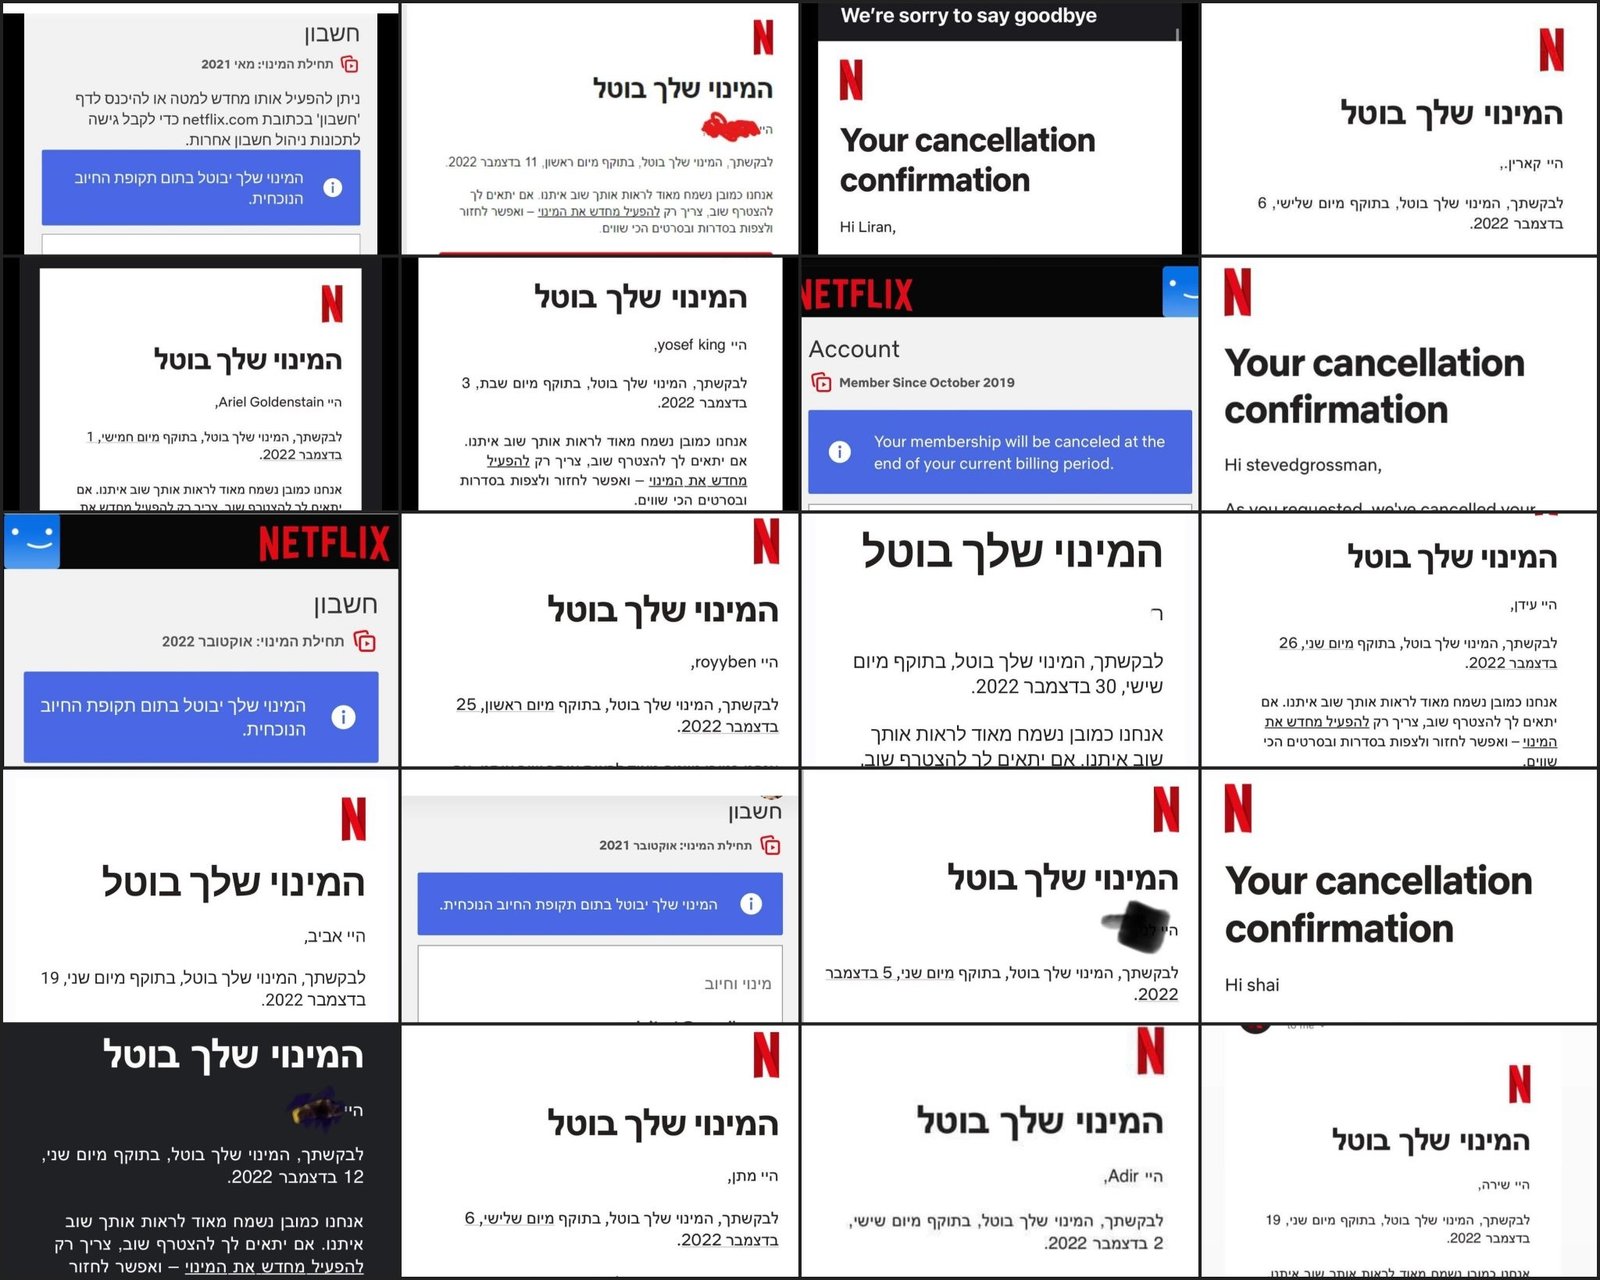 מחאה בישראל נגד הסרט "פרחה" בנטפליקס 📻 האחראי על האינטרנט 2022.12.03